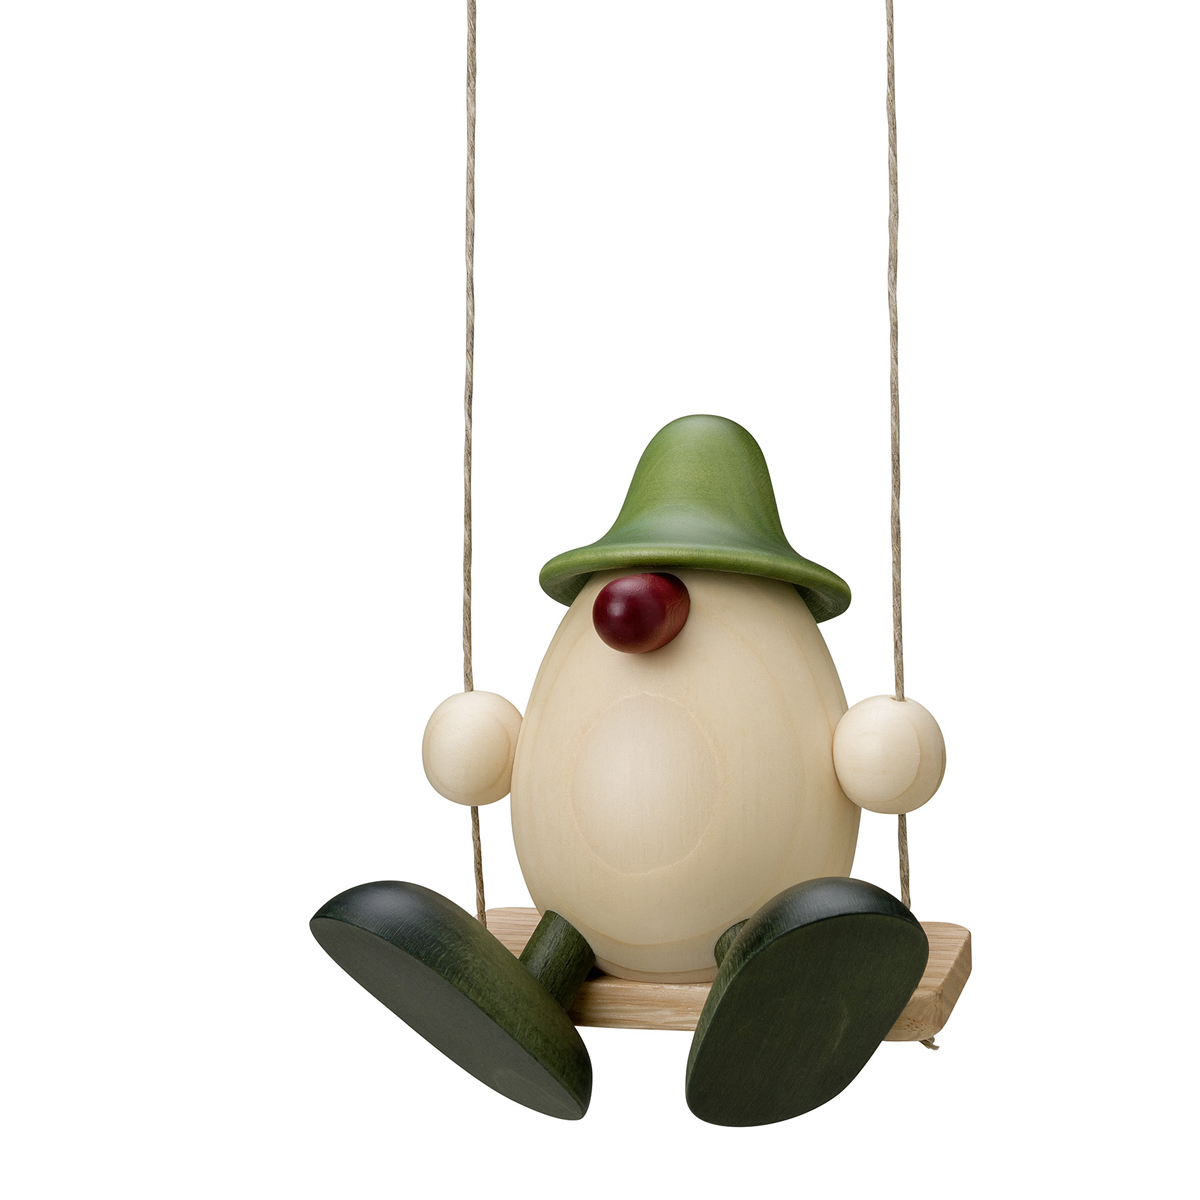 Egghead Bruno on a swing, green